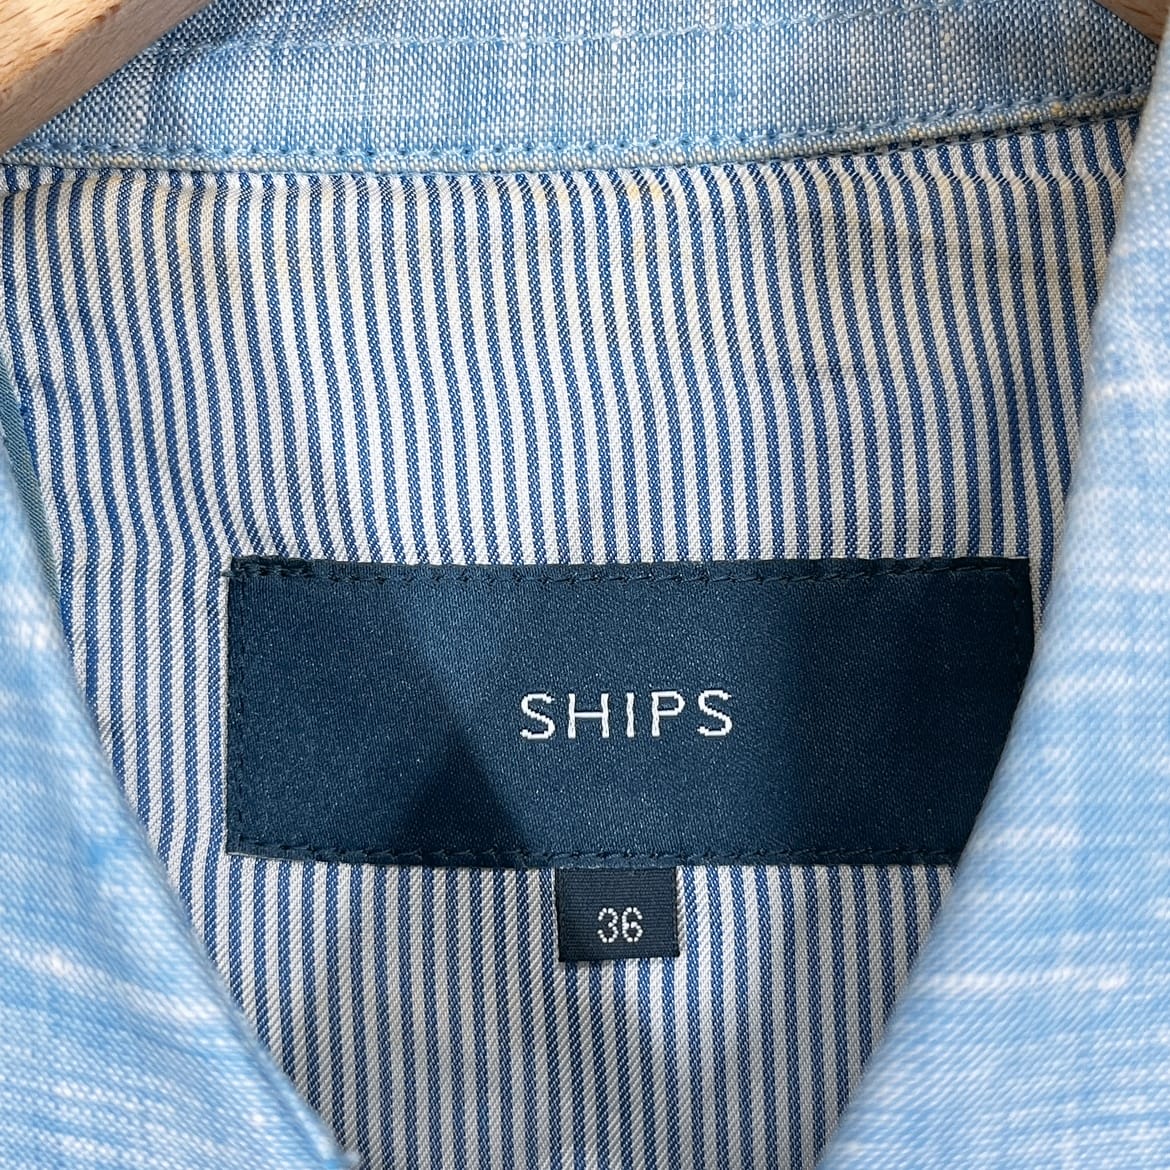 レディース36 SHIPS ロングコート SHIPS ブルー 青 長袖 襟付き ベルト付き おしゃれ シンプル スリット シップス 【14680】